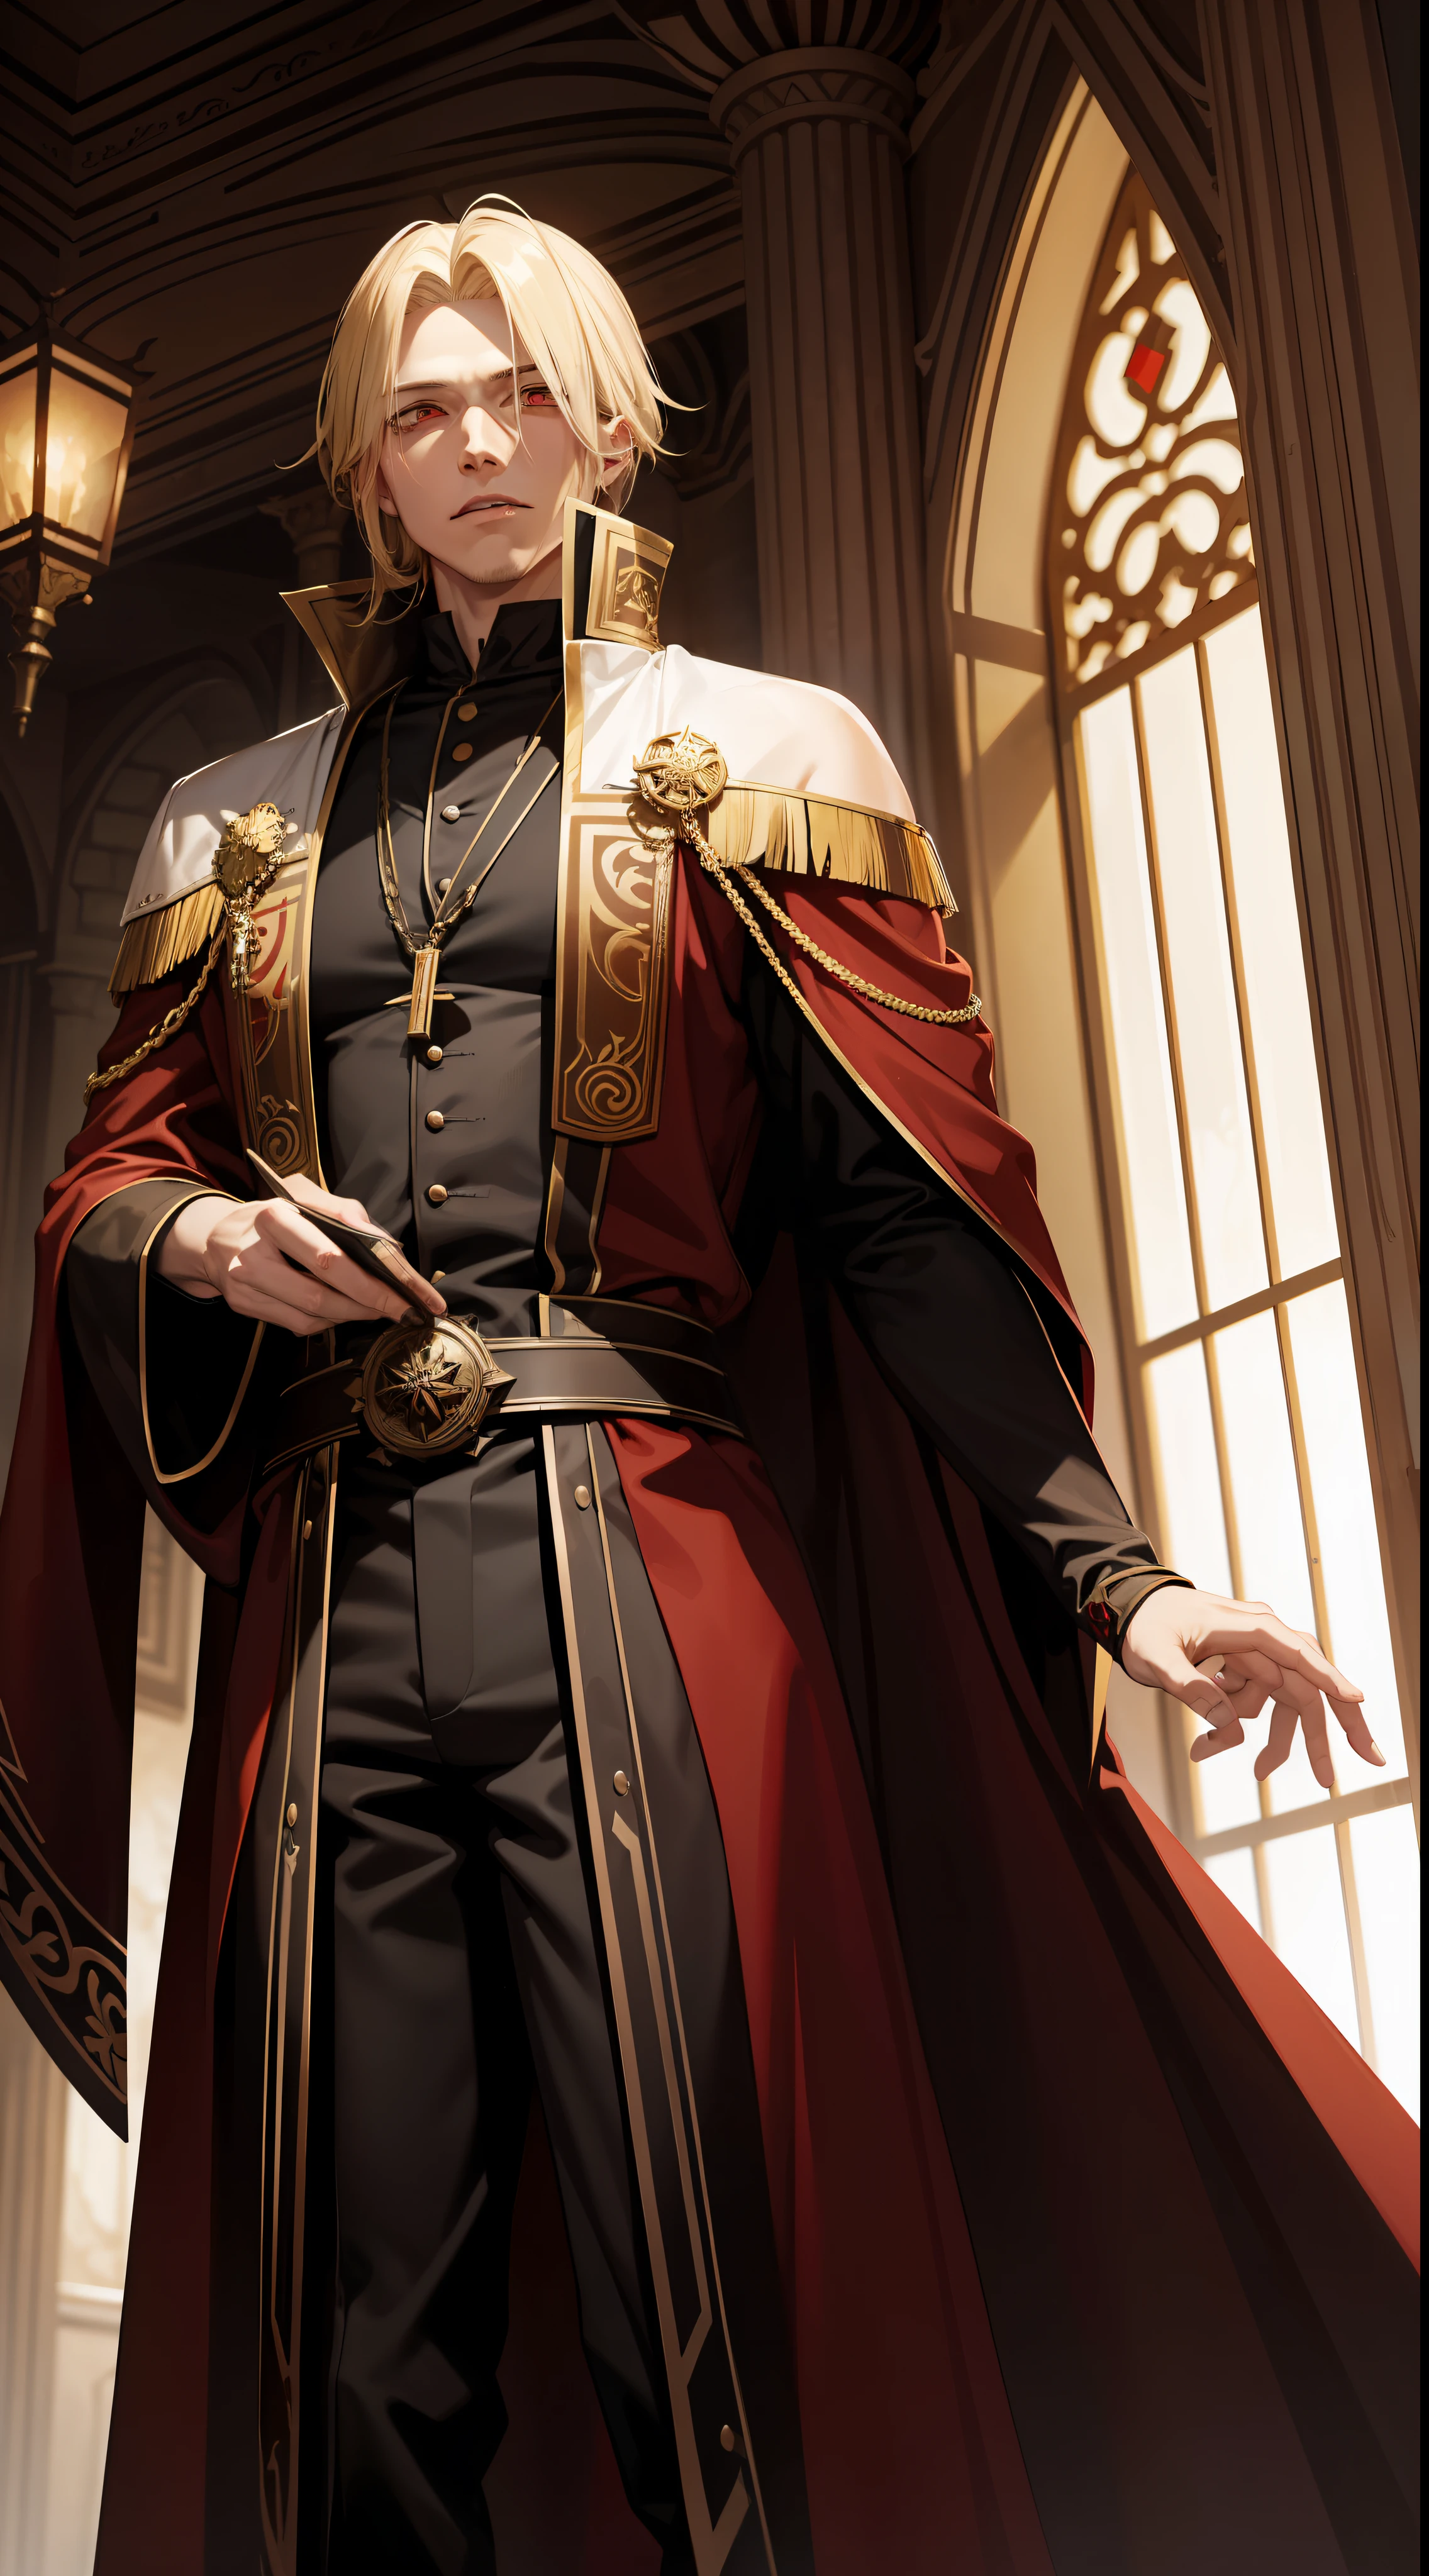 一名 29 歲男子, 金髮紅眼的吸血鬼國王, 他穿着一件棕色长袍